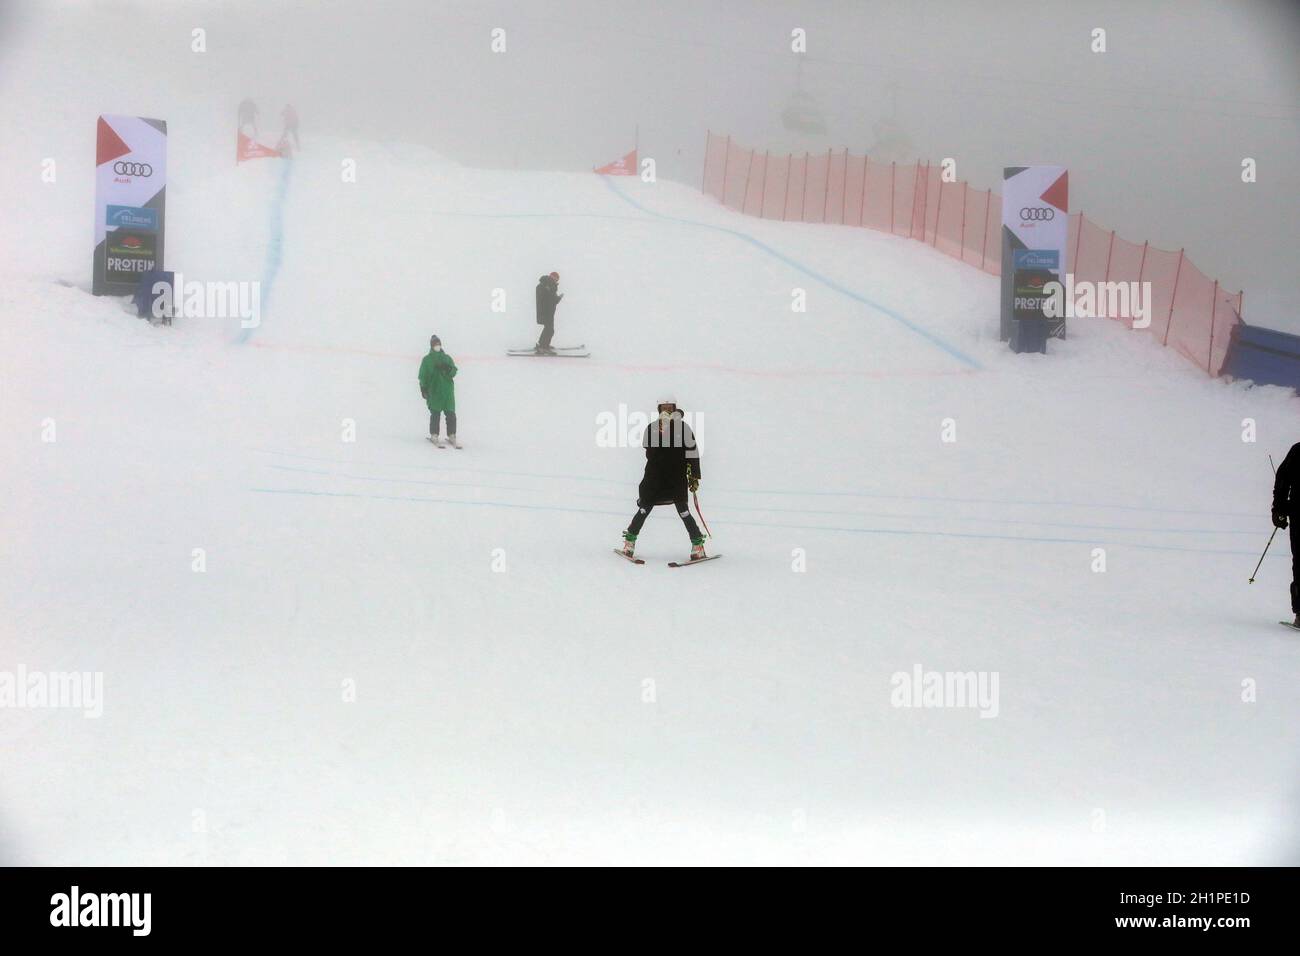 Auch das zwetie Rennen zum FIS Ski Cross Weltcup 2021 am Feldberg musste wegen zu weicher Piste am Sonntag abgesagt werden - Schlechte Sicht mit Nebel Stock Photo